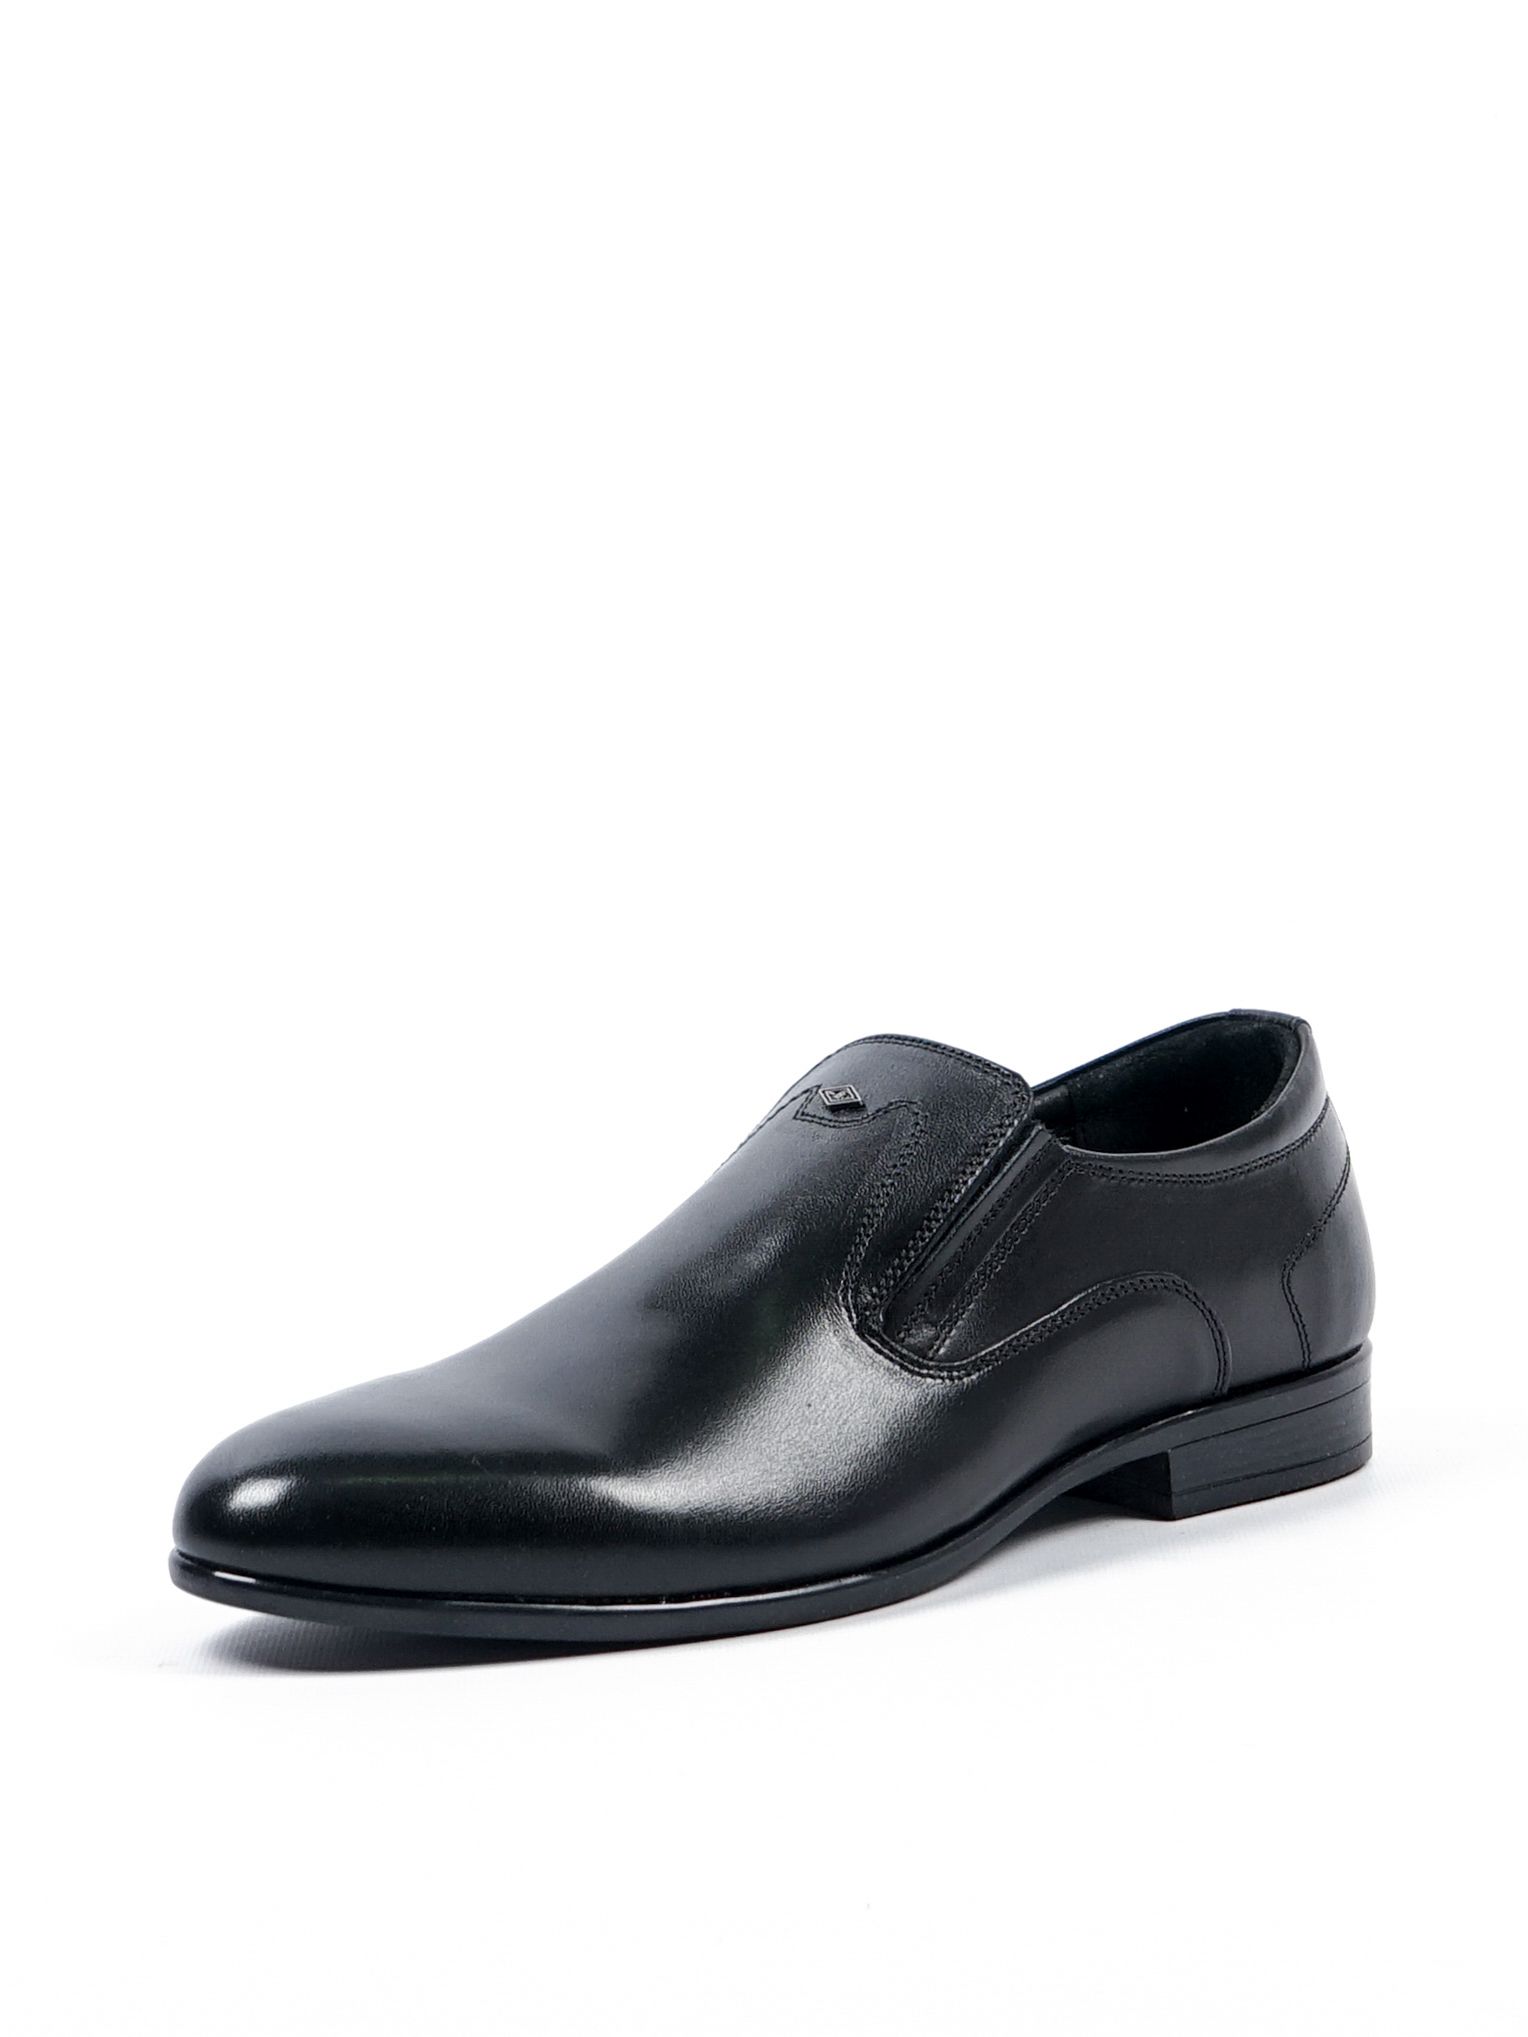 Туфли мужские Comfort Shoes 1098B черные 39 RU